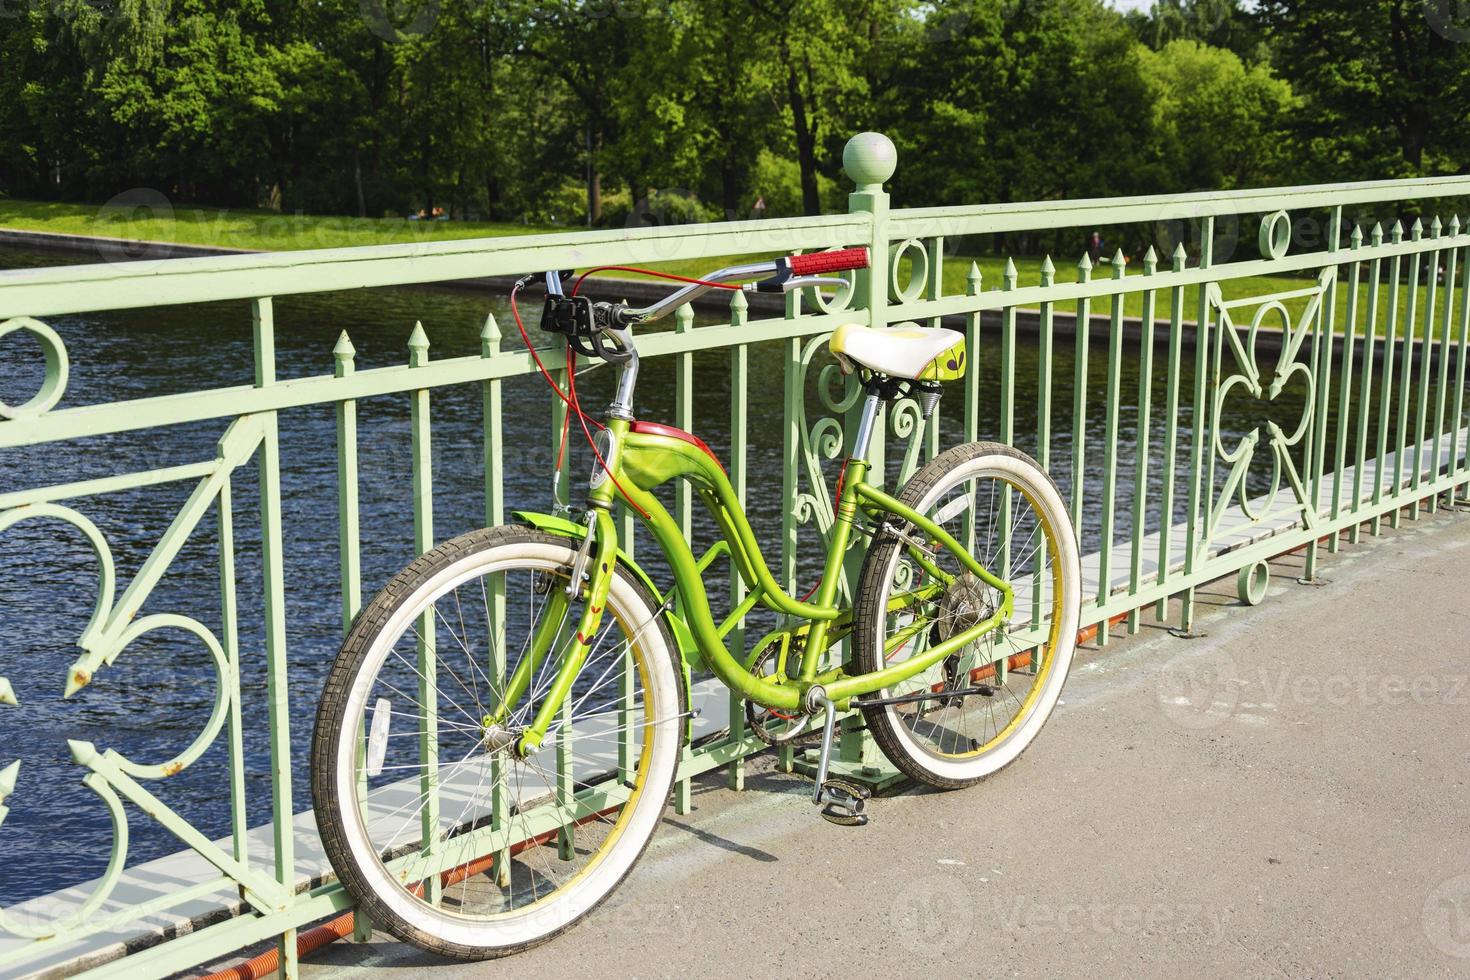 mooi fiets kruiser geparkeerd Aan de brug over- de rivier, wielersport, buitenshuis activiteiten foto